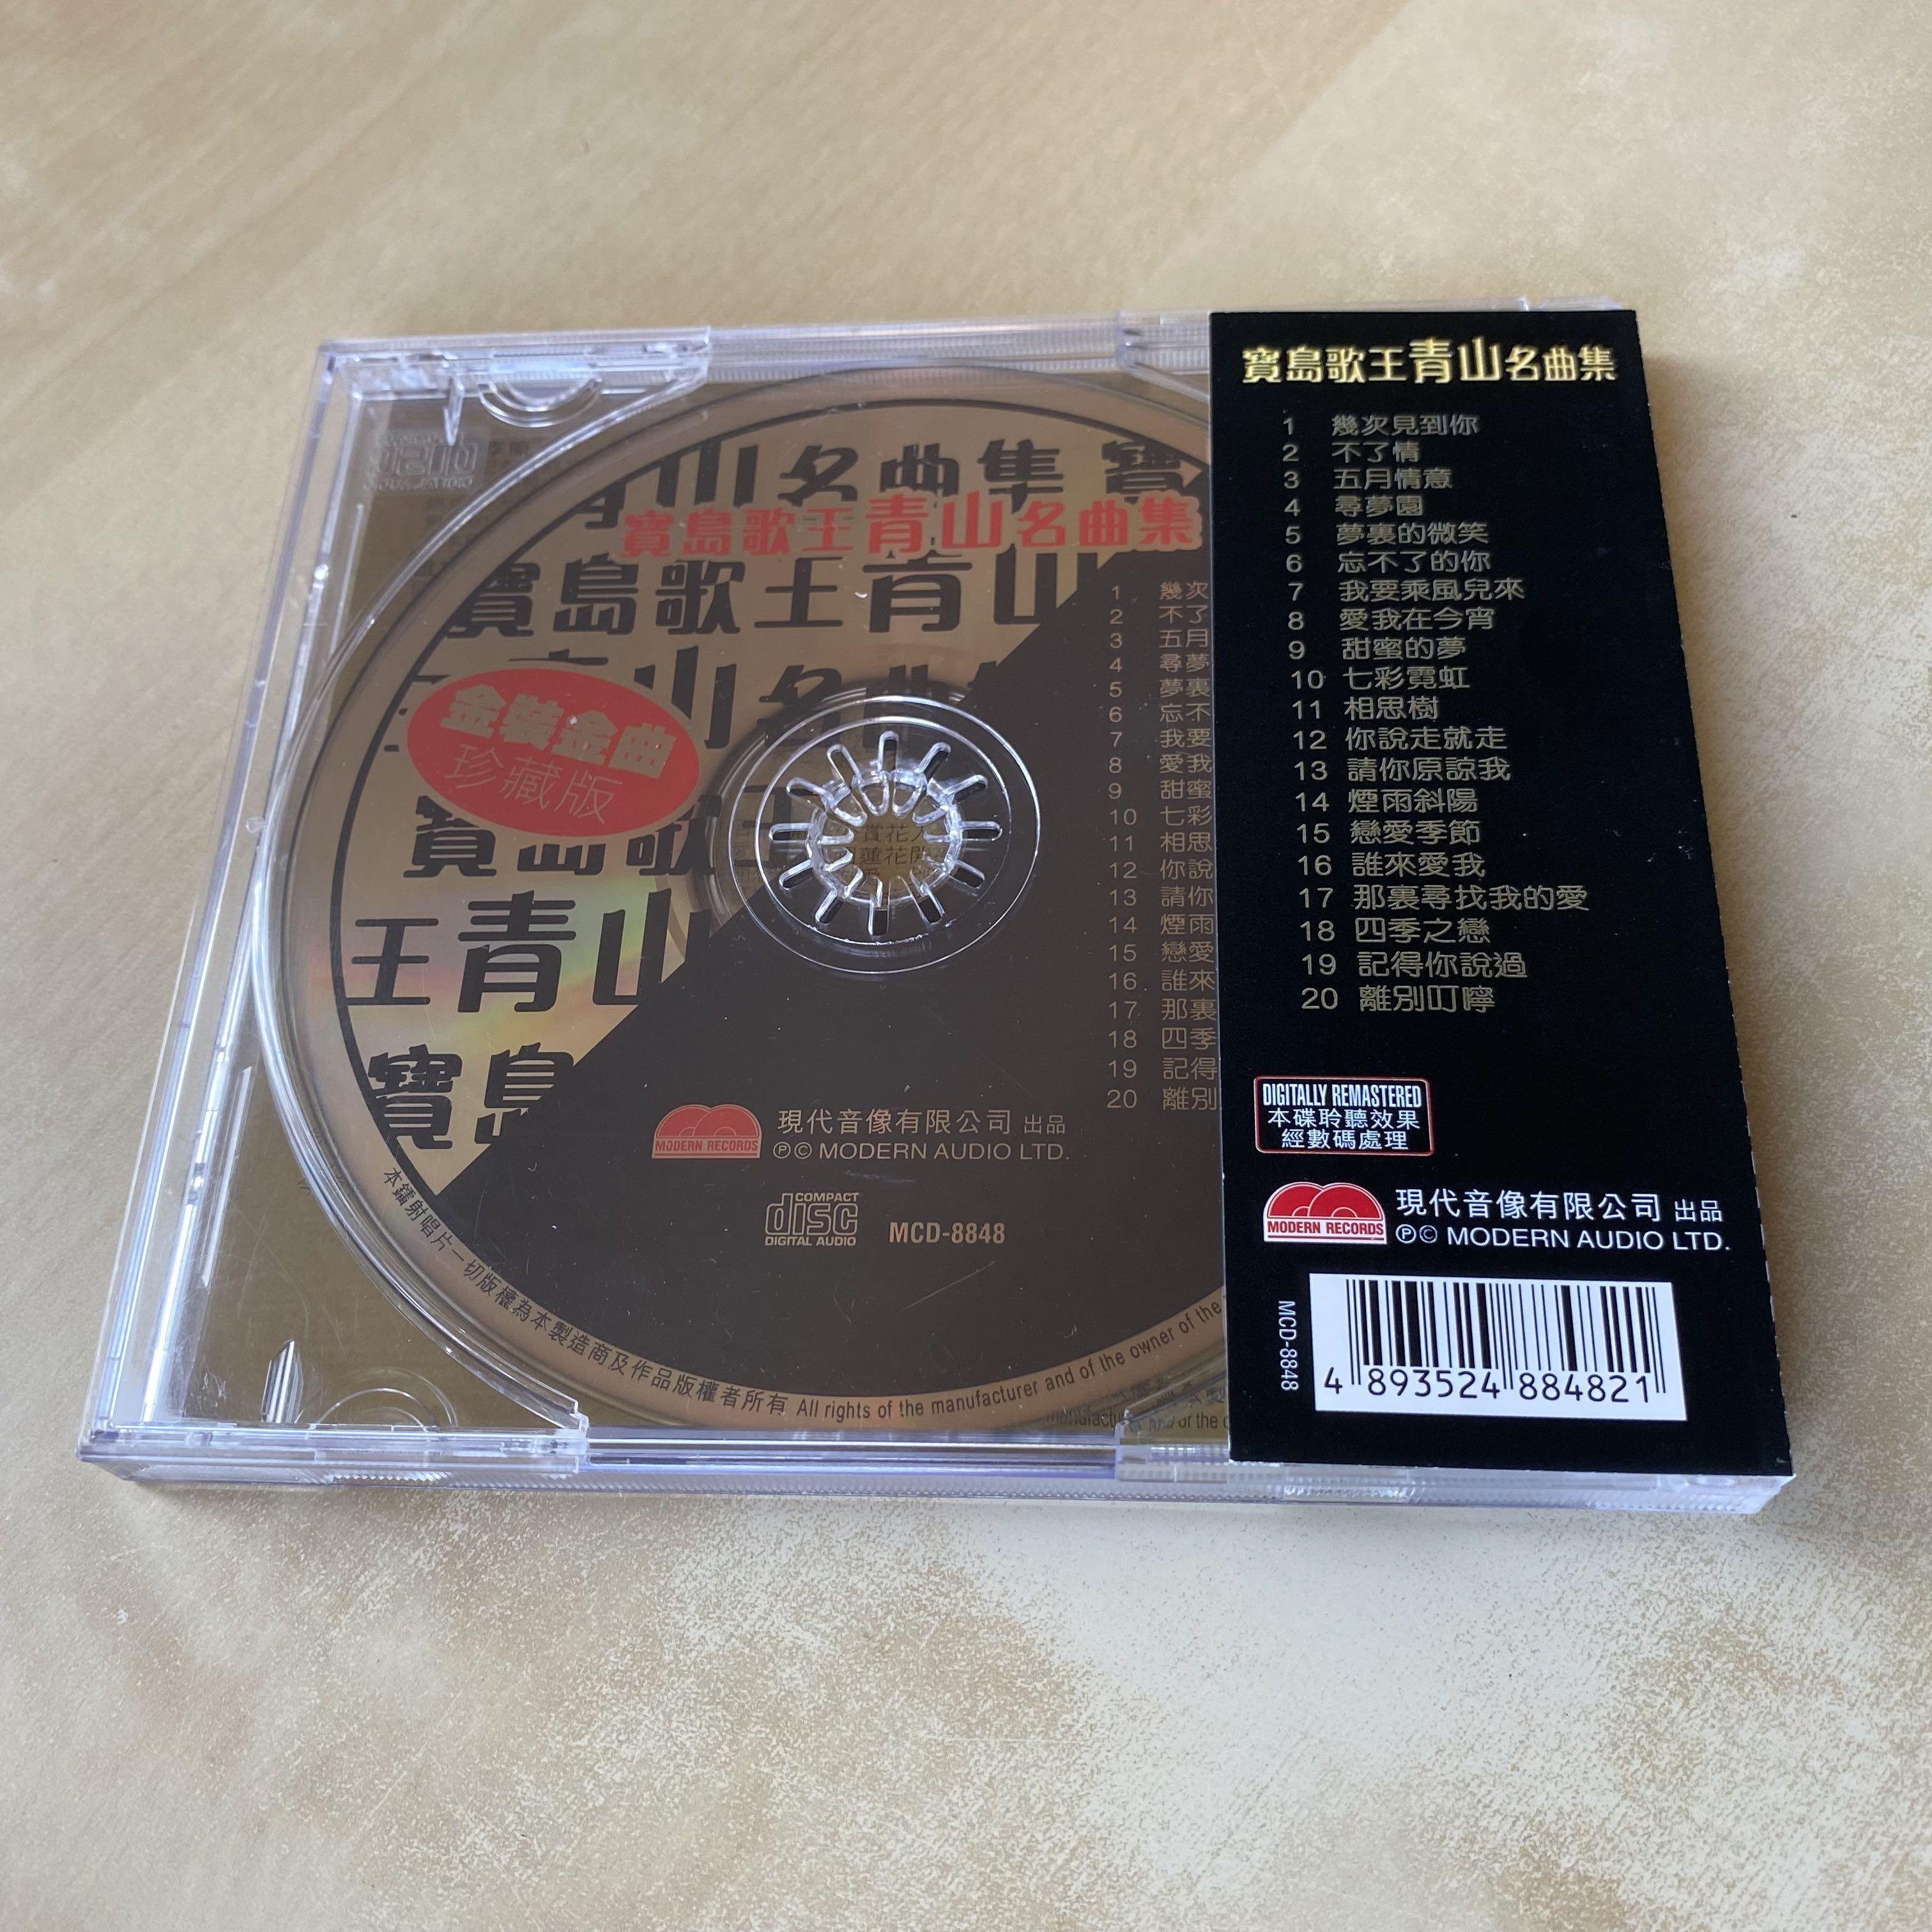 CD丨寶島歌王青山名曲集, 興趣及遊戲, 音樂、樂器& 配件, 音樂與媒體 